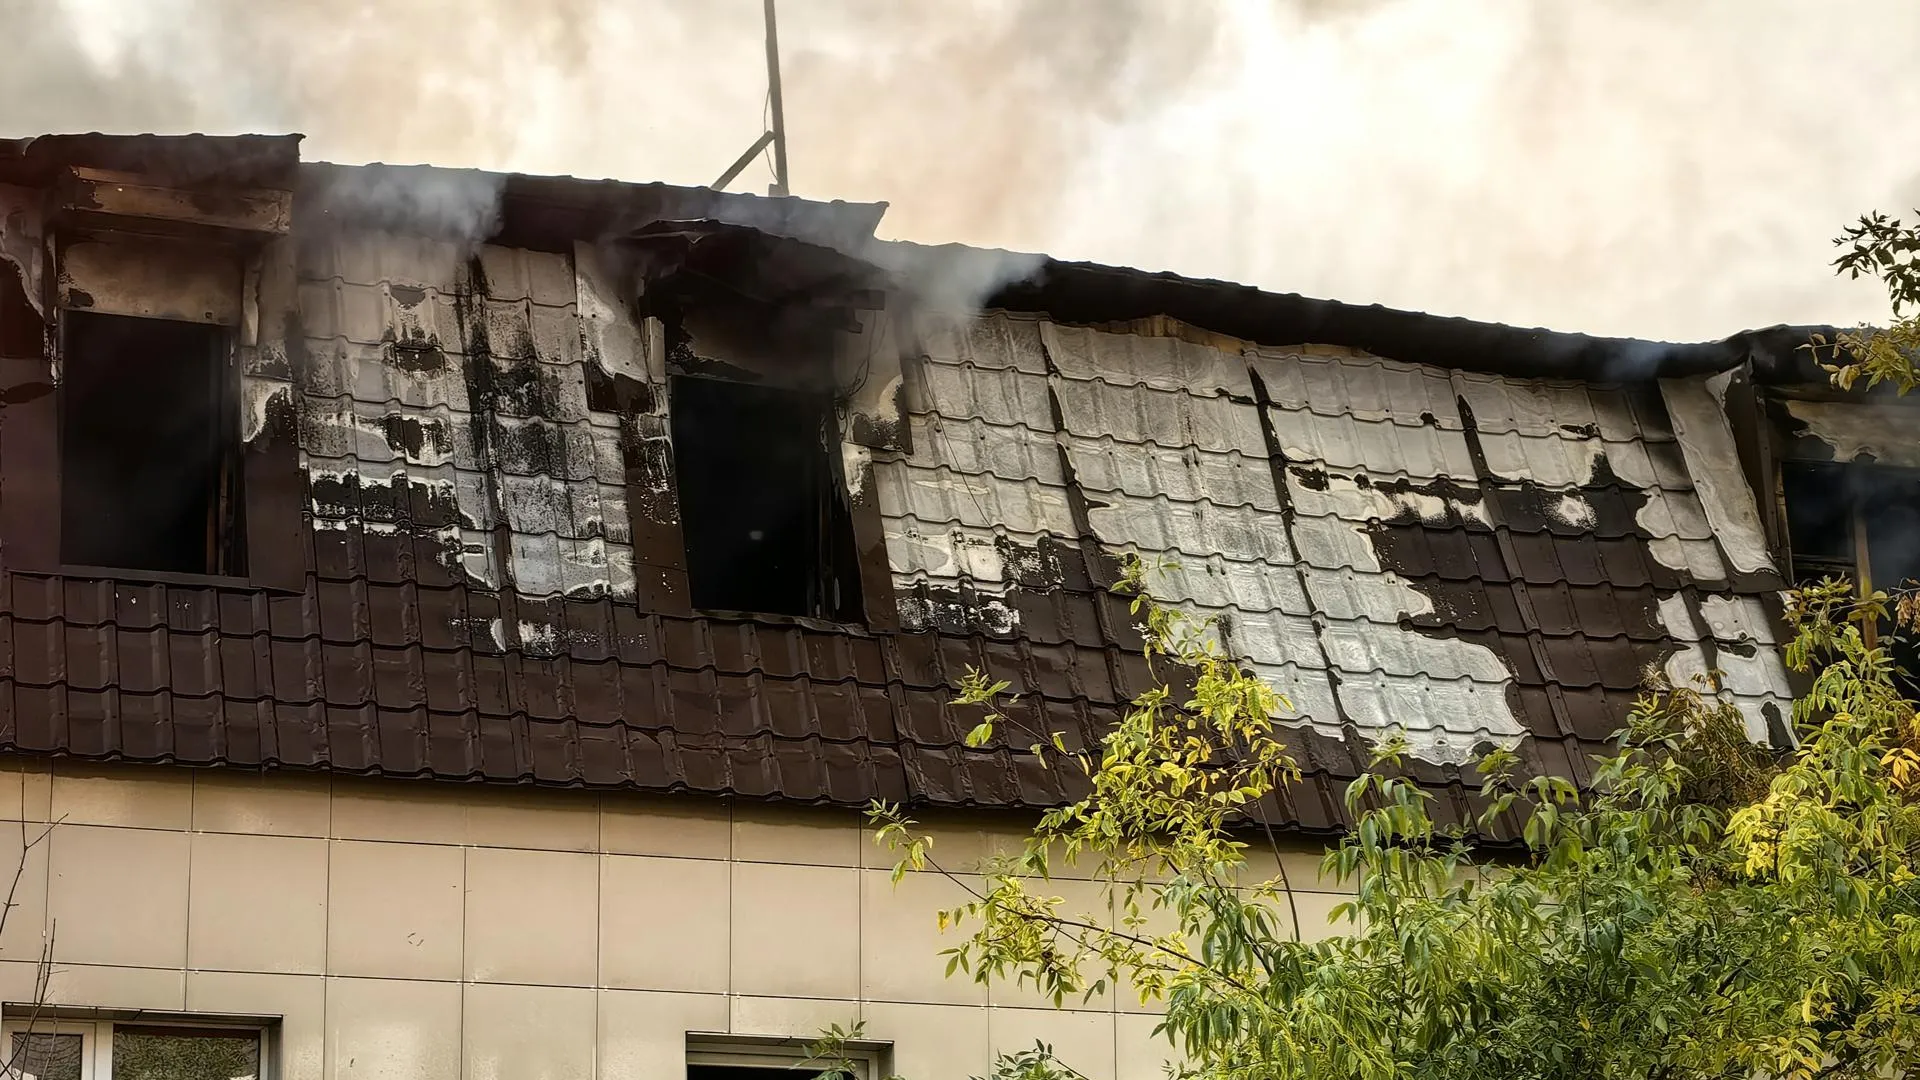 Некоторые арендаторы успели вынести свои вещи и оборудование из горящего здания в Щелково